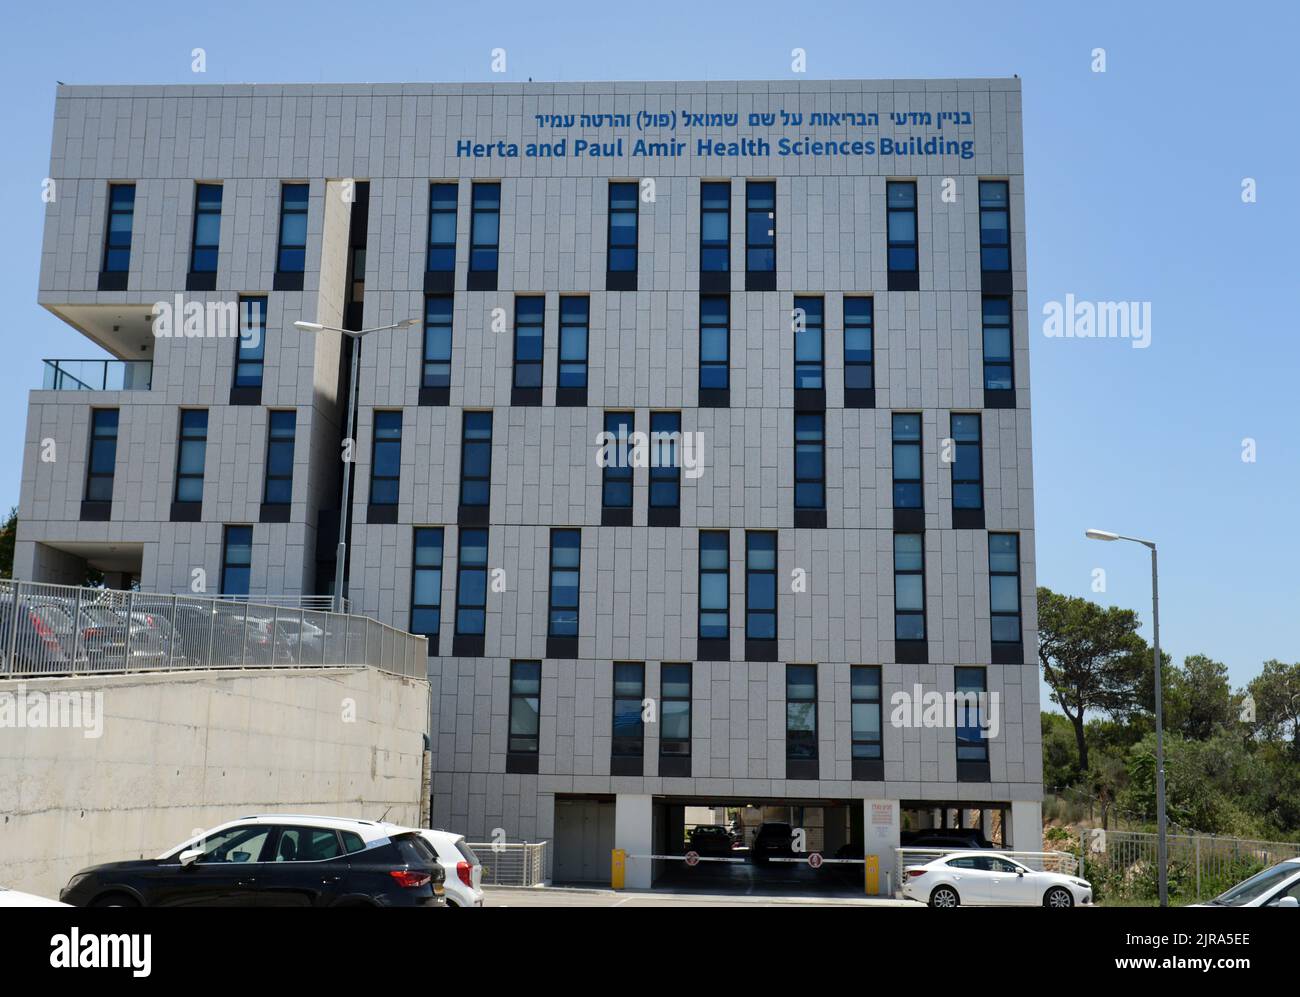 Edificio de ciencias de la salud Herta y Paul Amir en la Universidad de Haifa en el Monte Carmelo, Haifa, Israel. Foto de stock